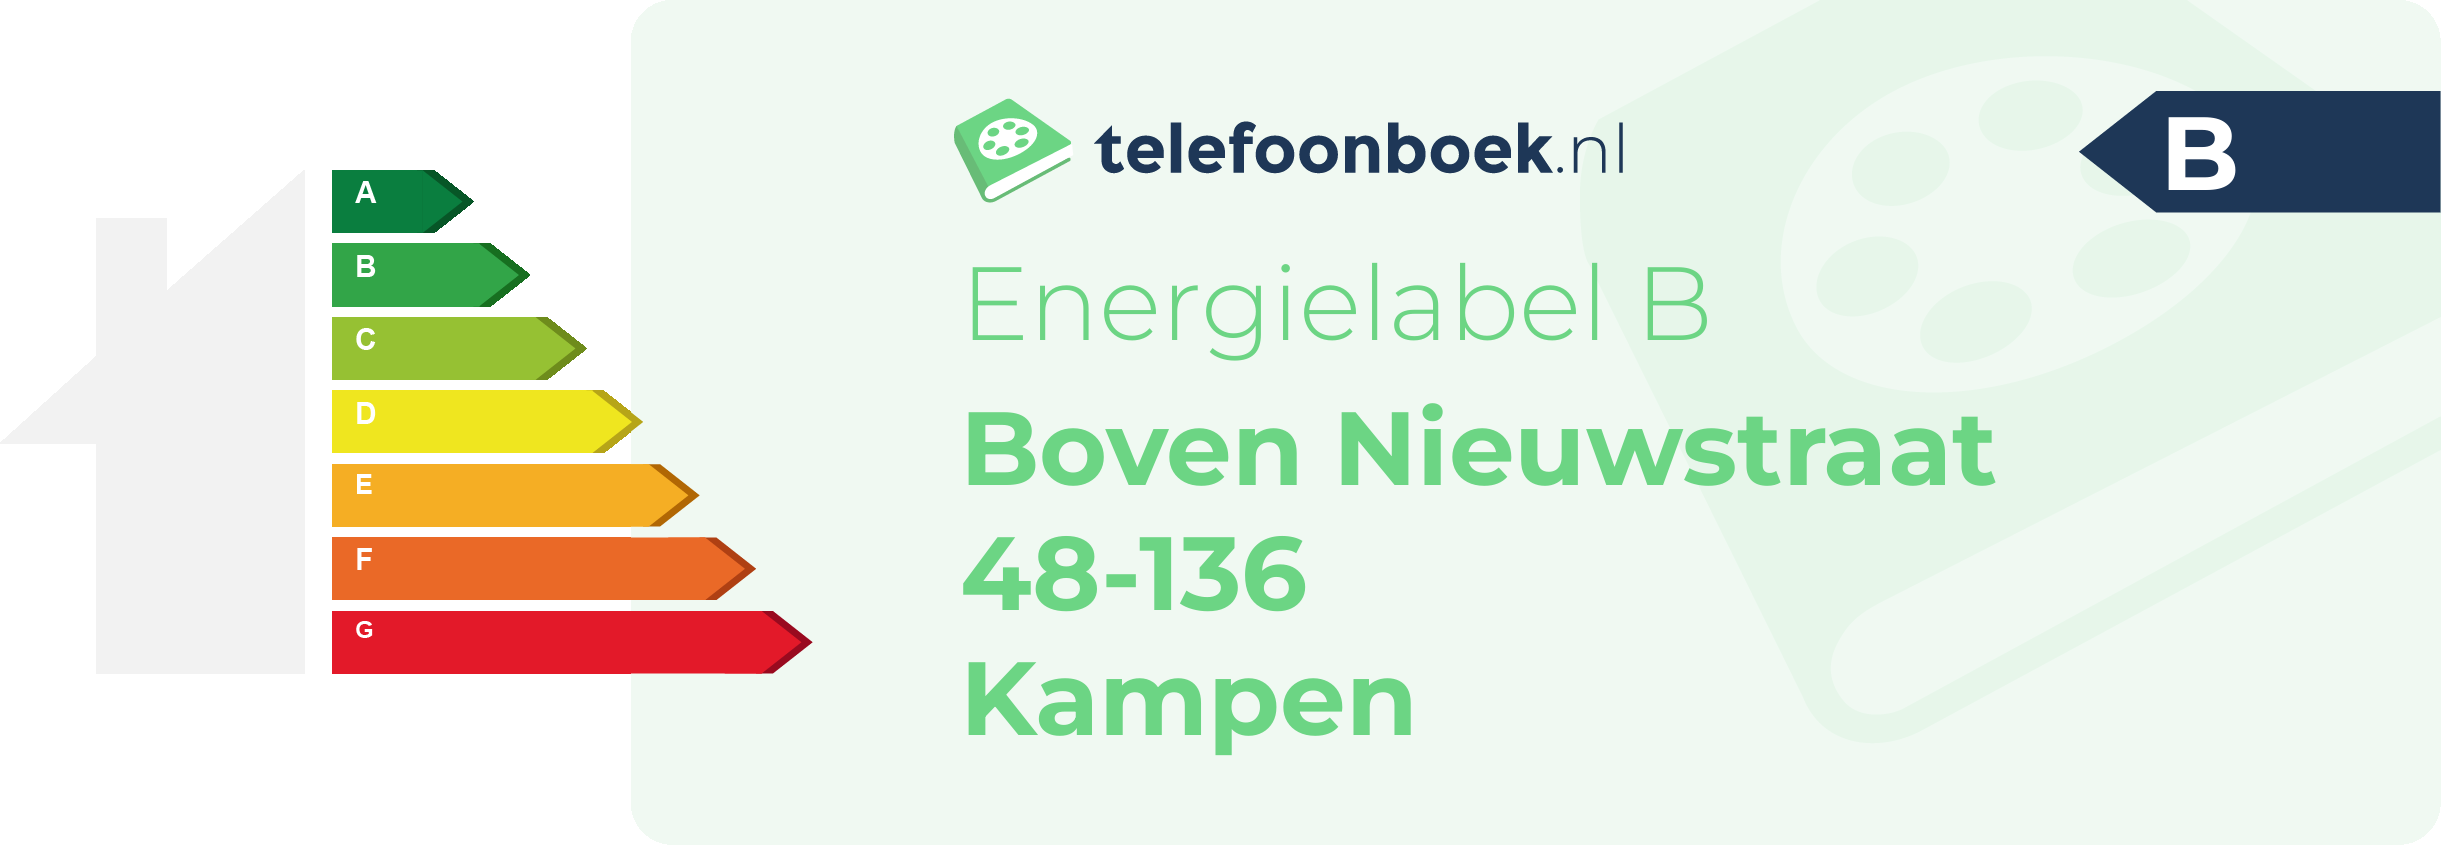 Energielabel Boven Nieuwstraat 48-136 Kampen